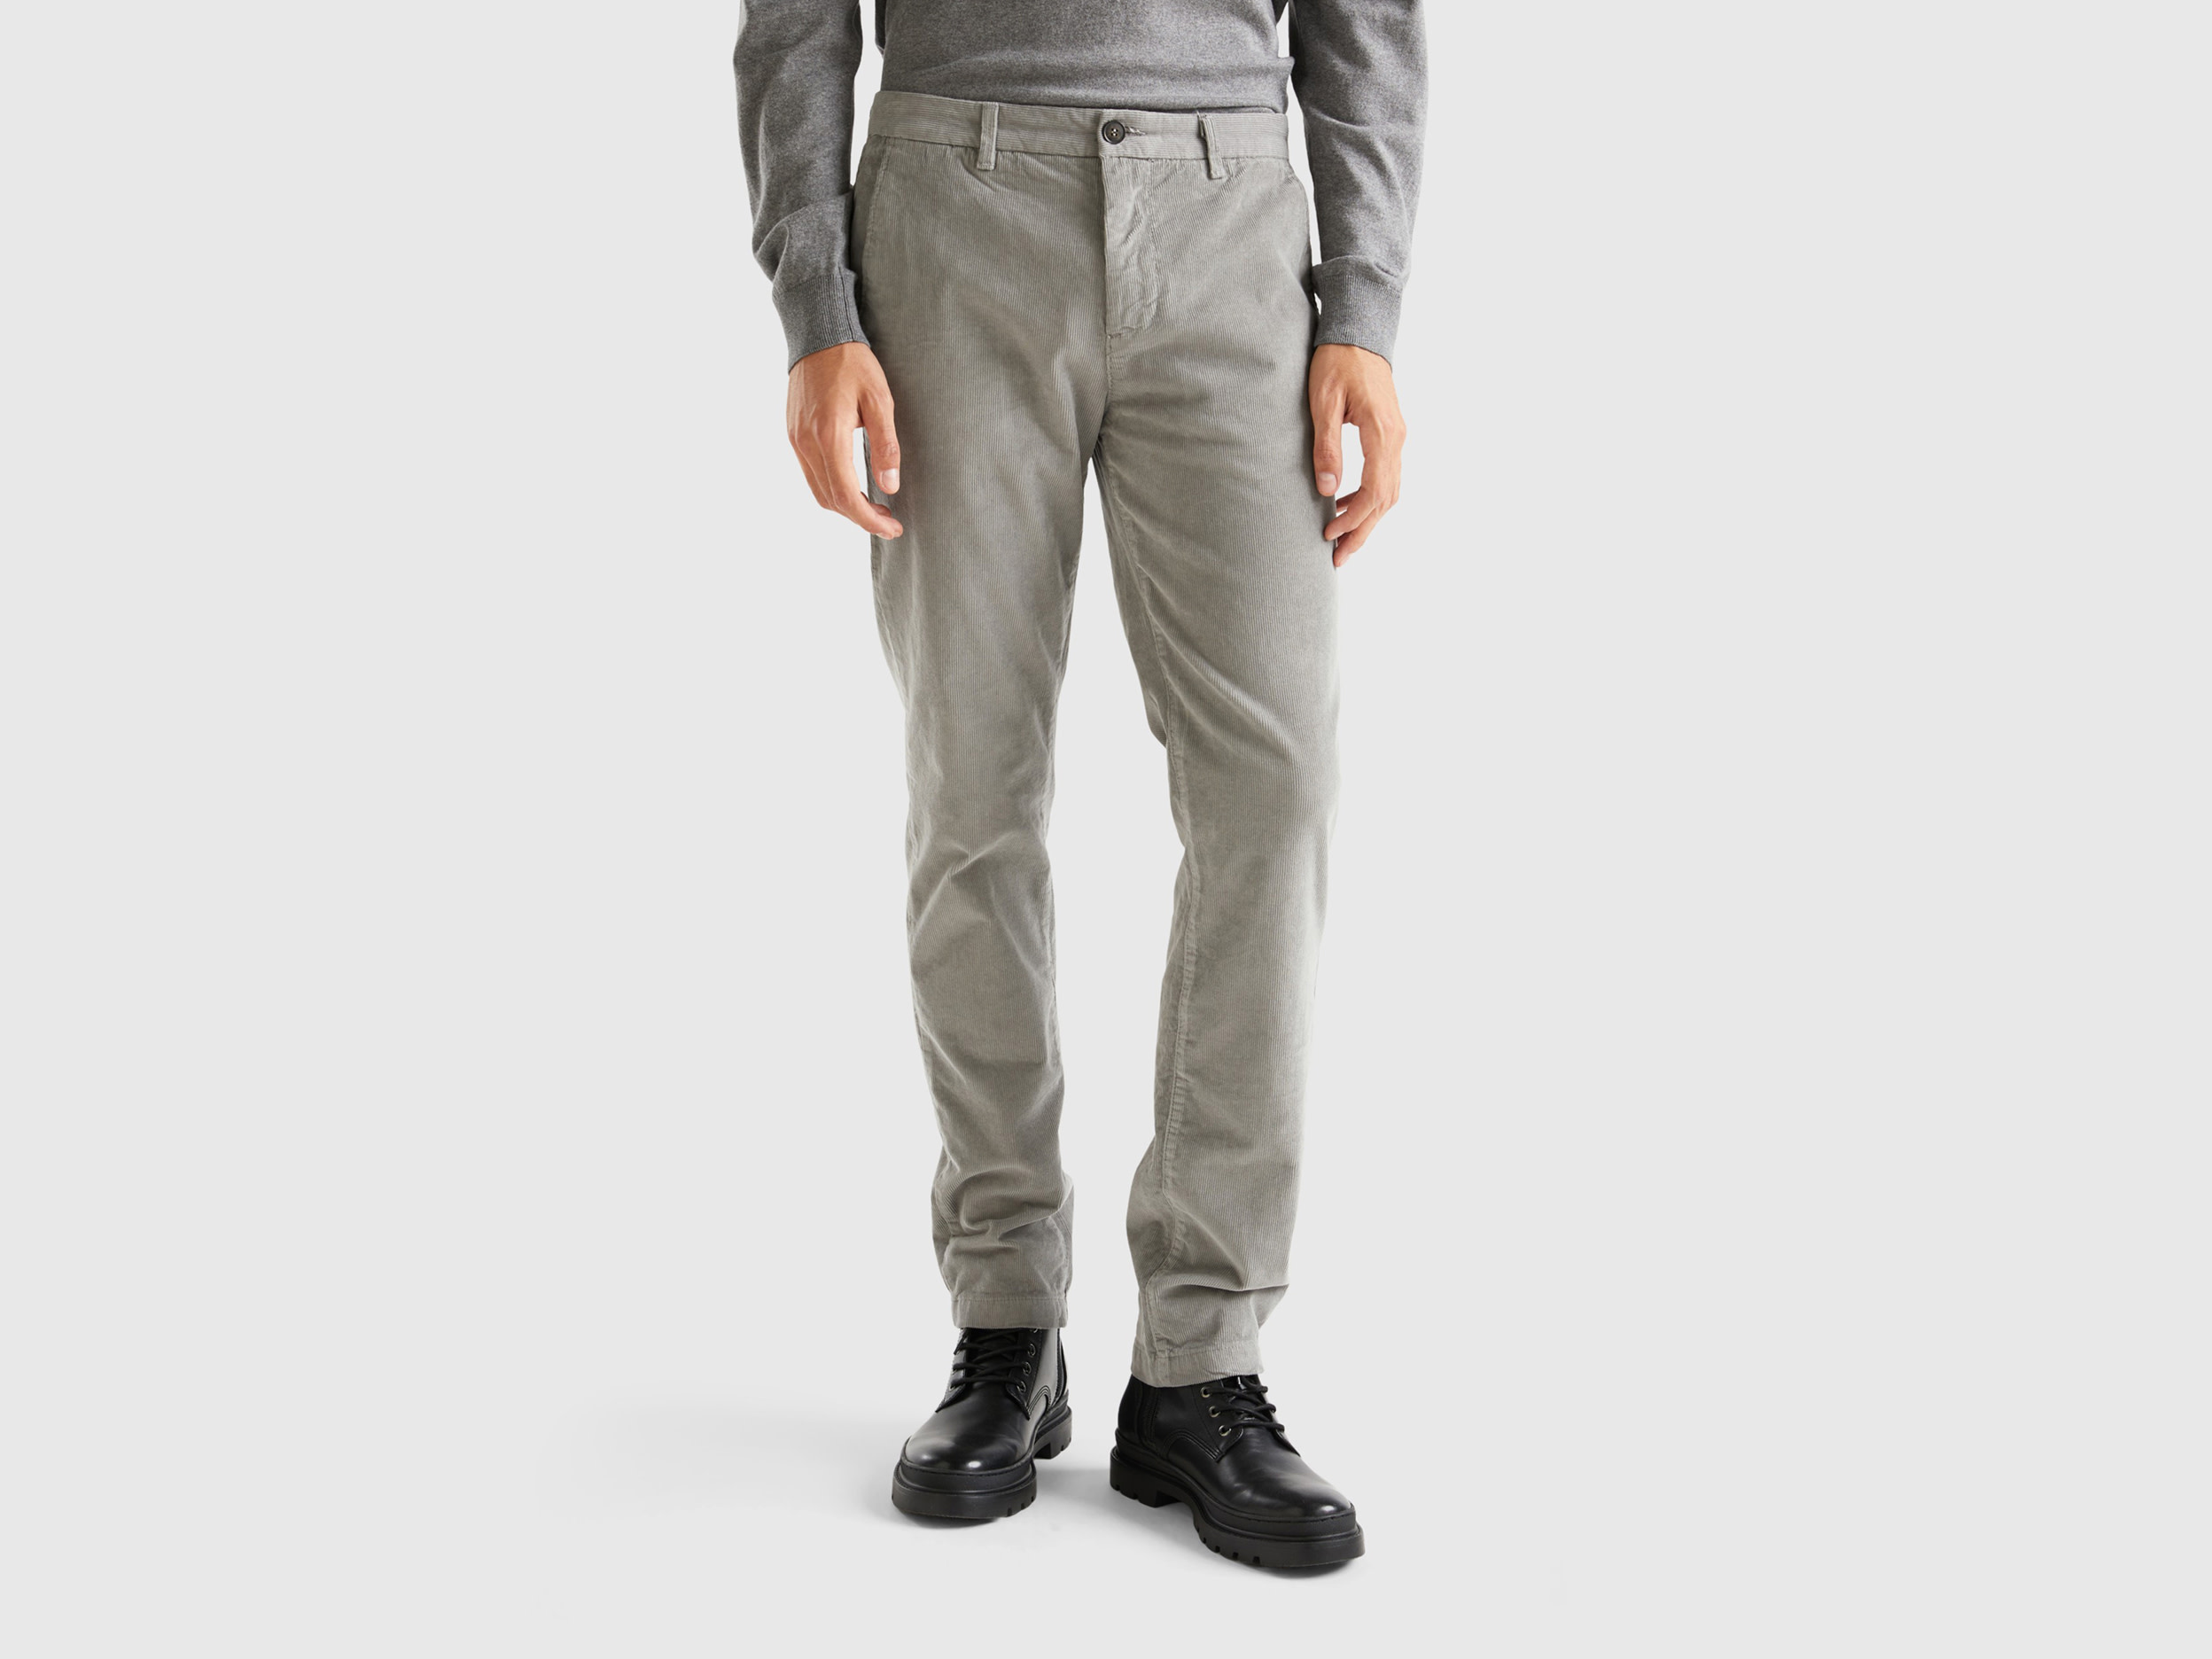 Benetton, Stretch Velvet Trousers, size 42, Light Gray, Men